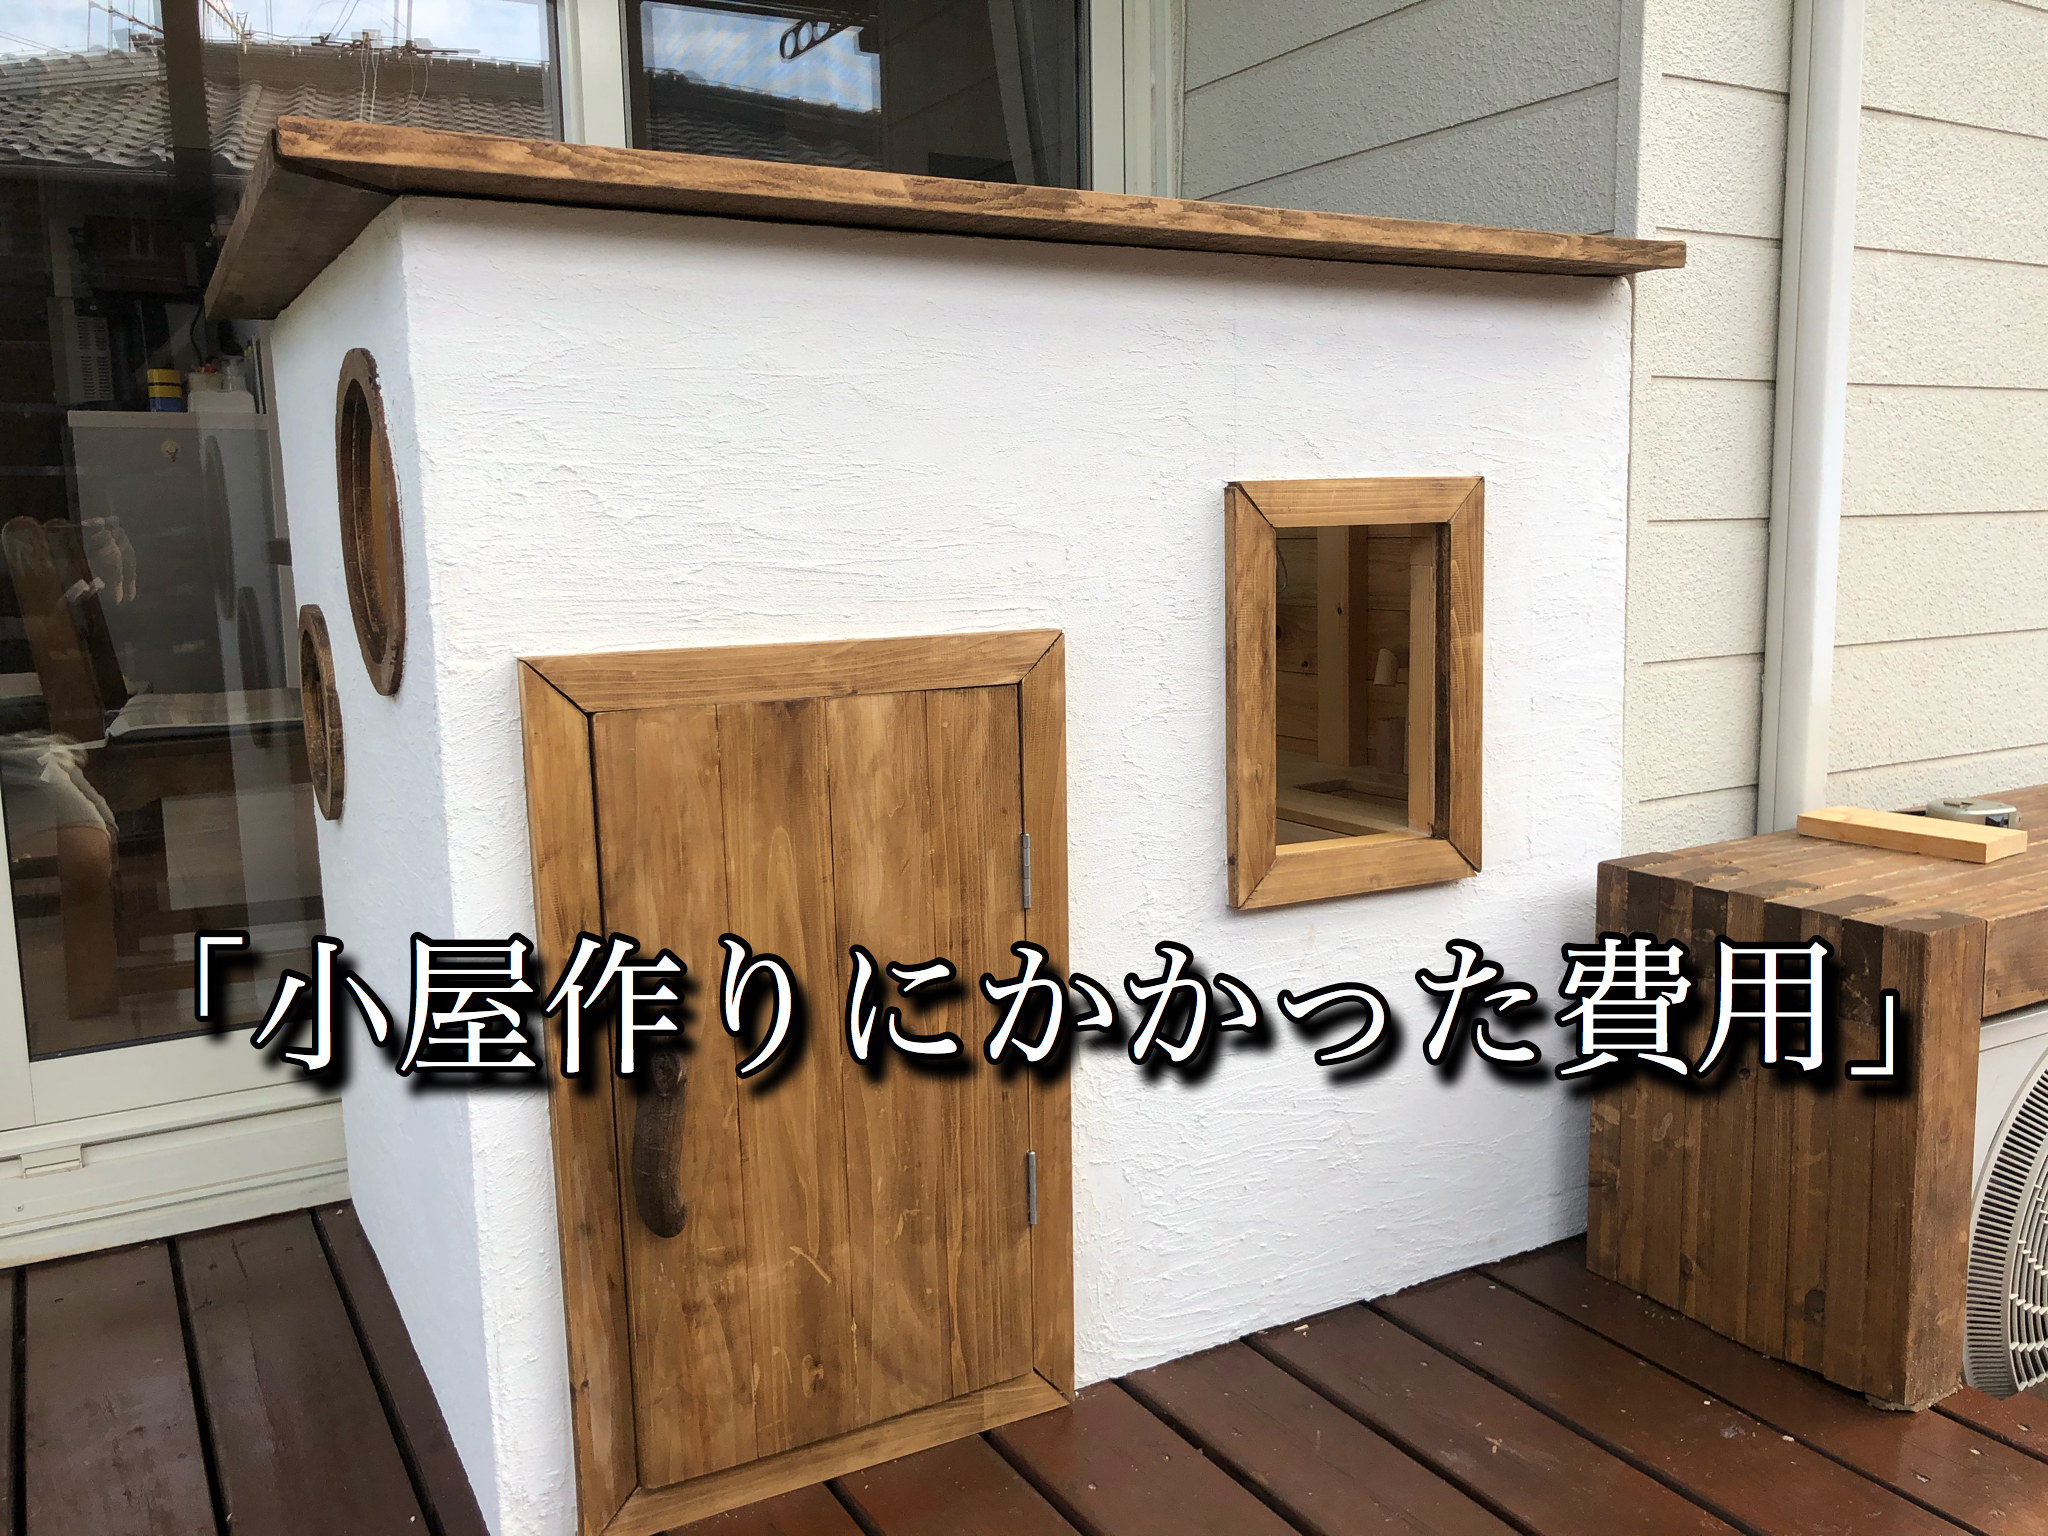 小屋作りにかかった費用 材料 2万ぐらいで小屋が作れました Yudaikawase Com